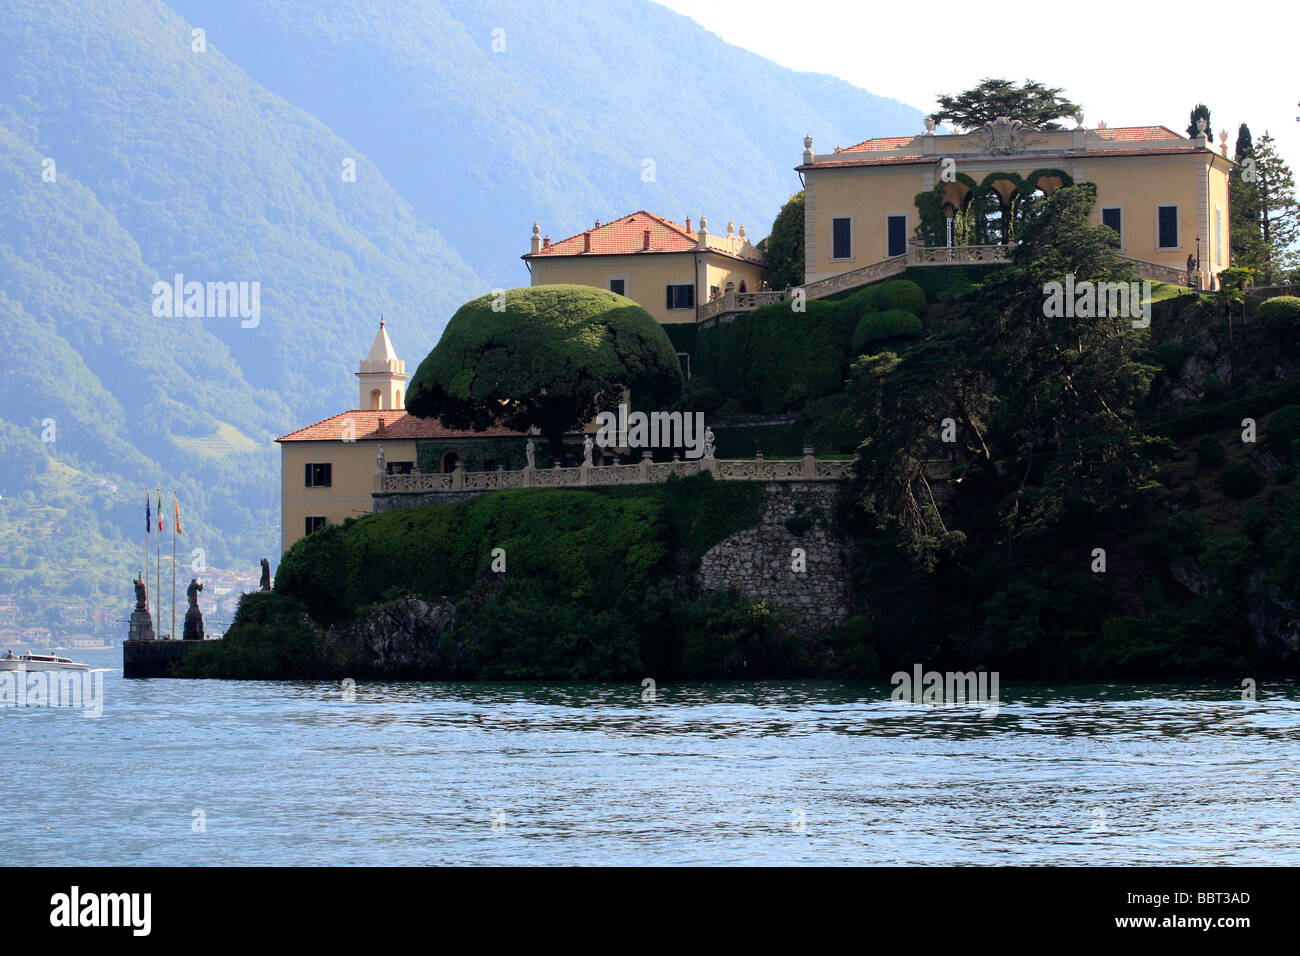 Villa del Balbianello è una villa sul lago di Como, la villa è stata costruita nel 1787 sul sito di un monastero francescano. Foto Stock